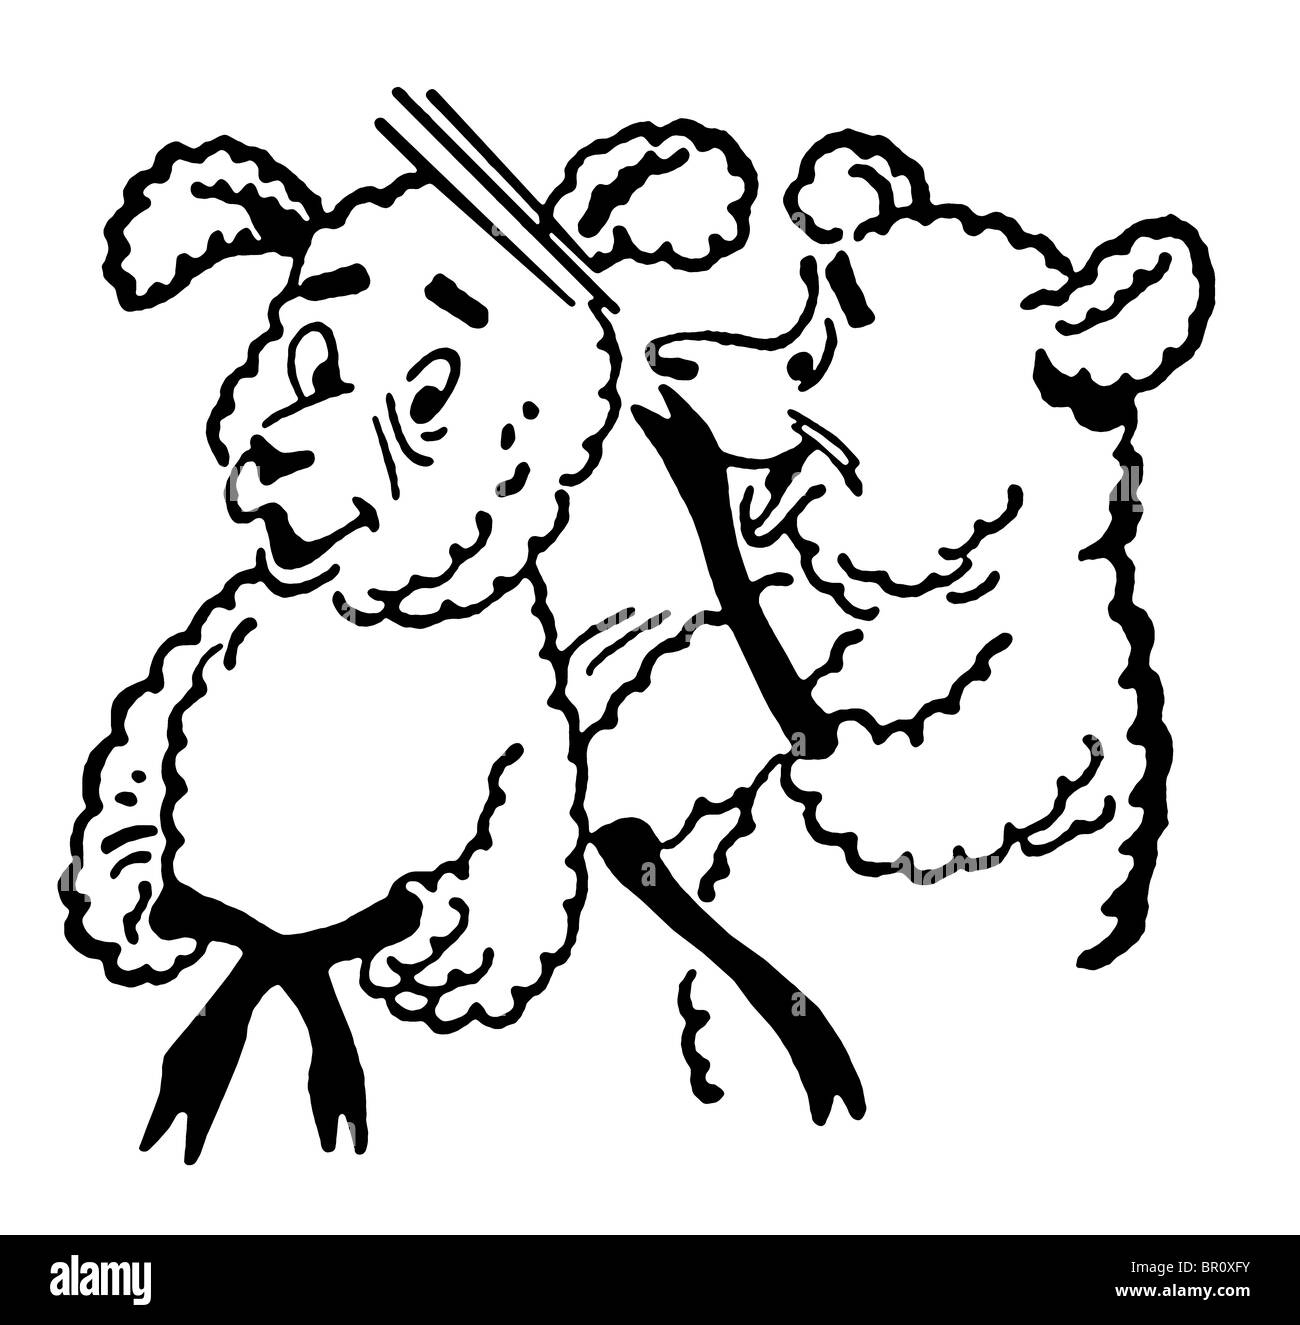 Une version noir et blanc d'une version noir et blanc d'un cartoon style dessin de deux moutons Banque D'Images